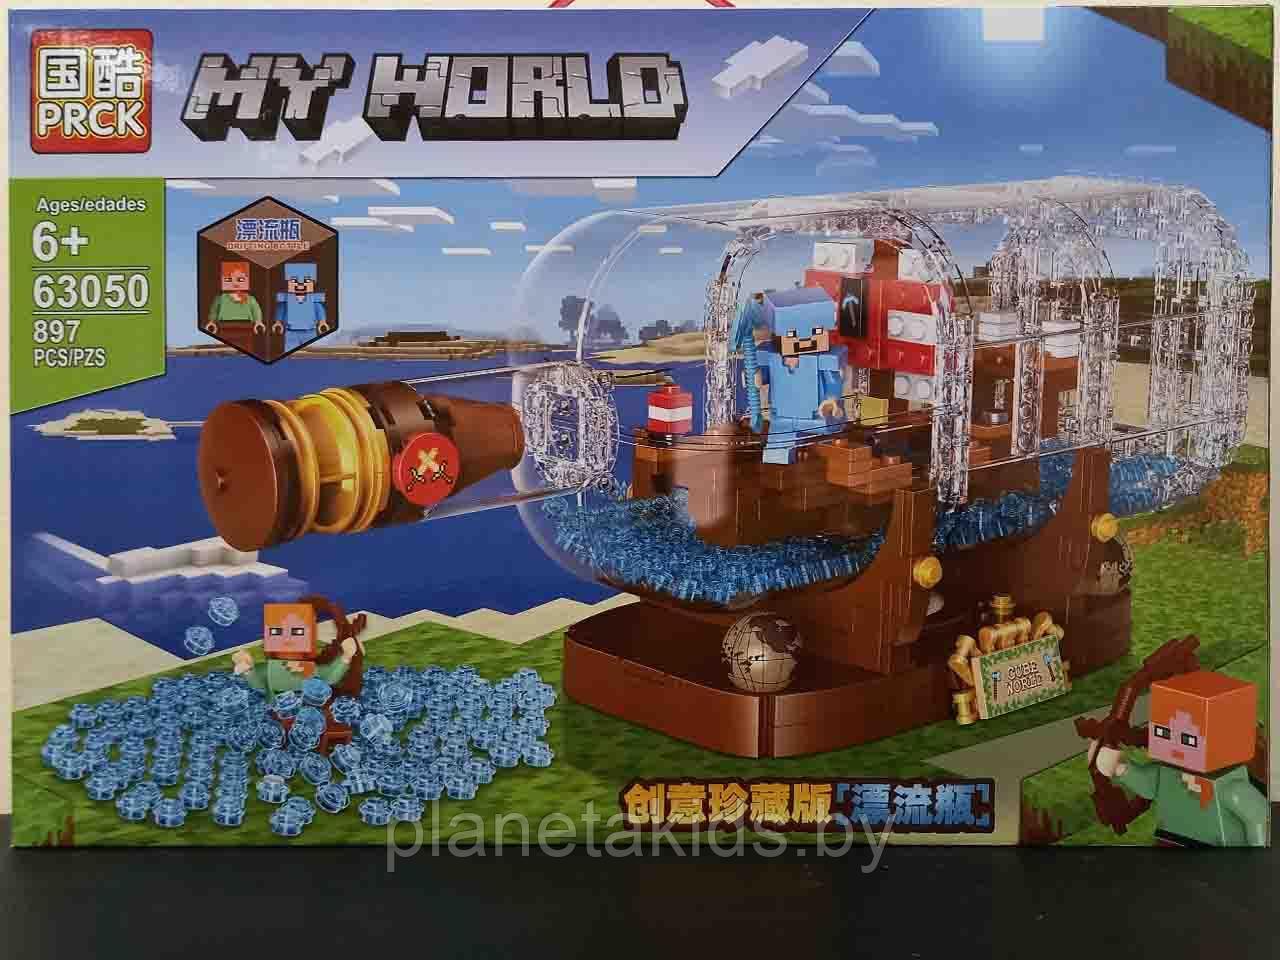 Конструктор PRCK Майнкрафт «Корабль в бутылке», 897 деталей, Аналог Лего Lego Minecraft 63050